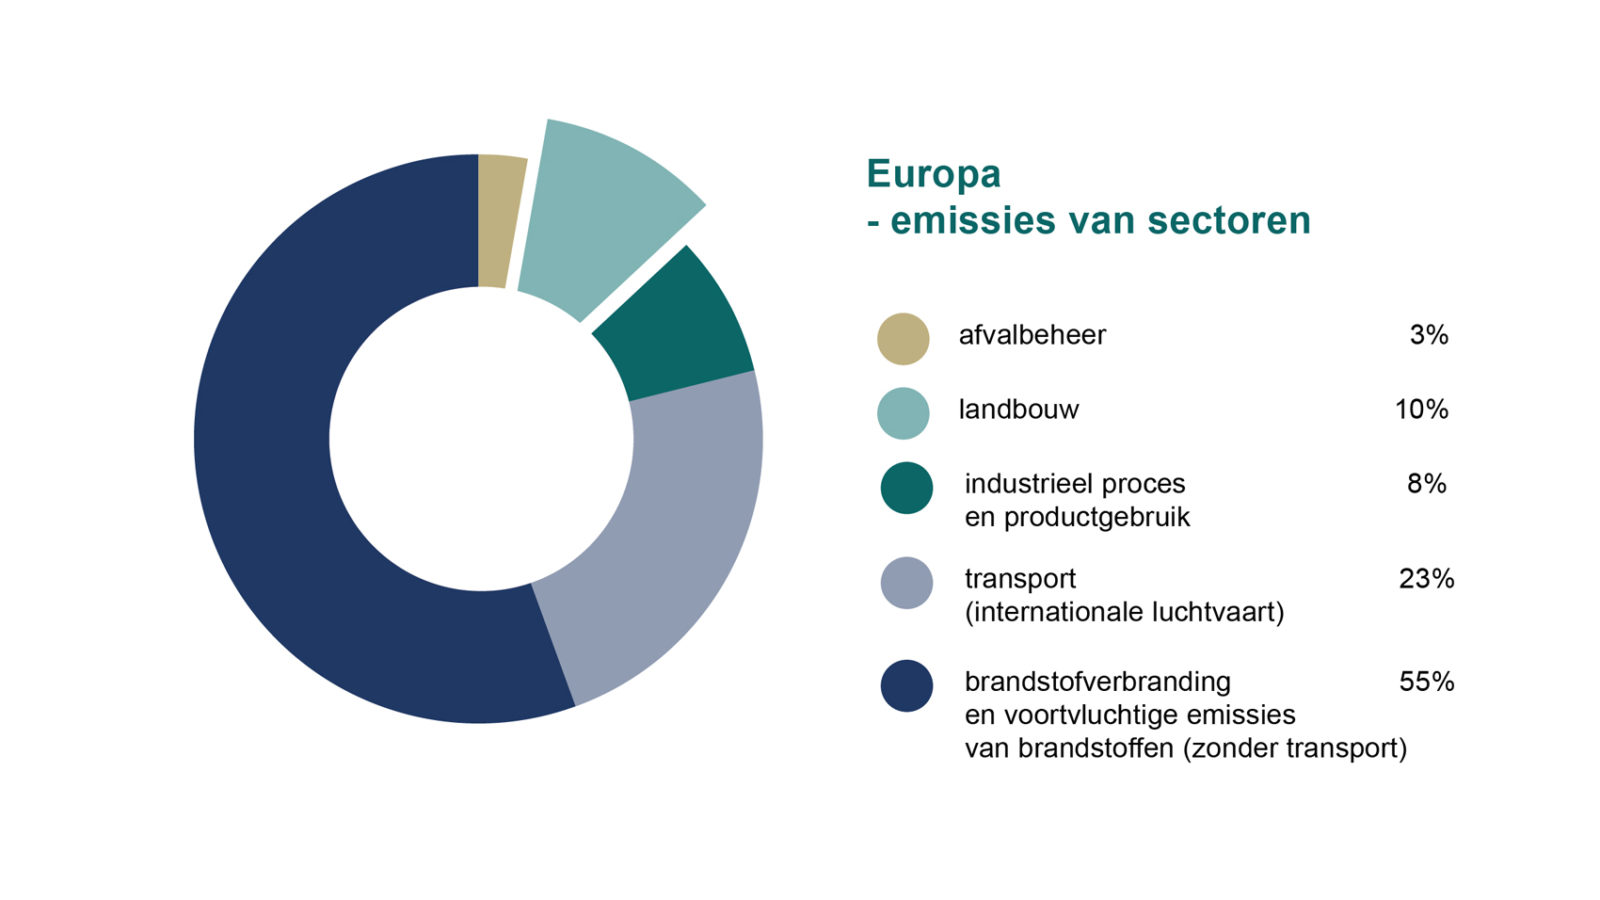 Europa emissies sectoren